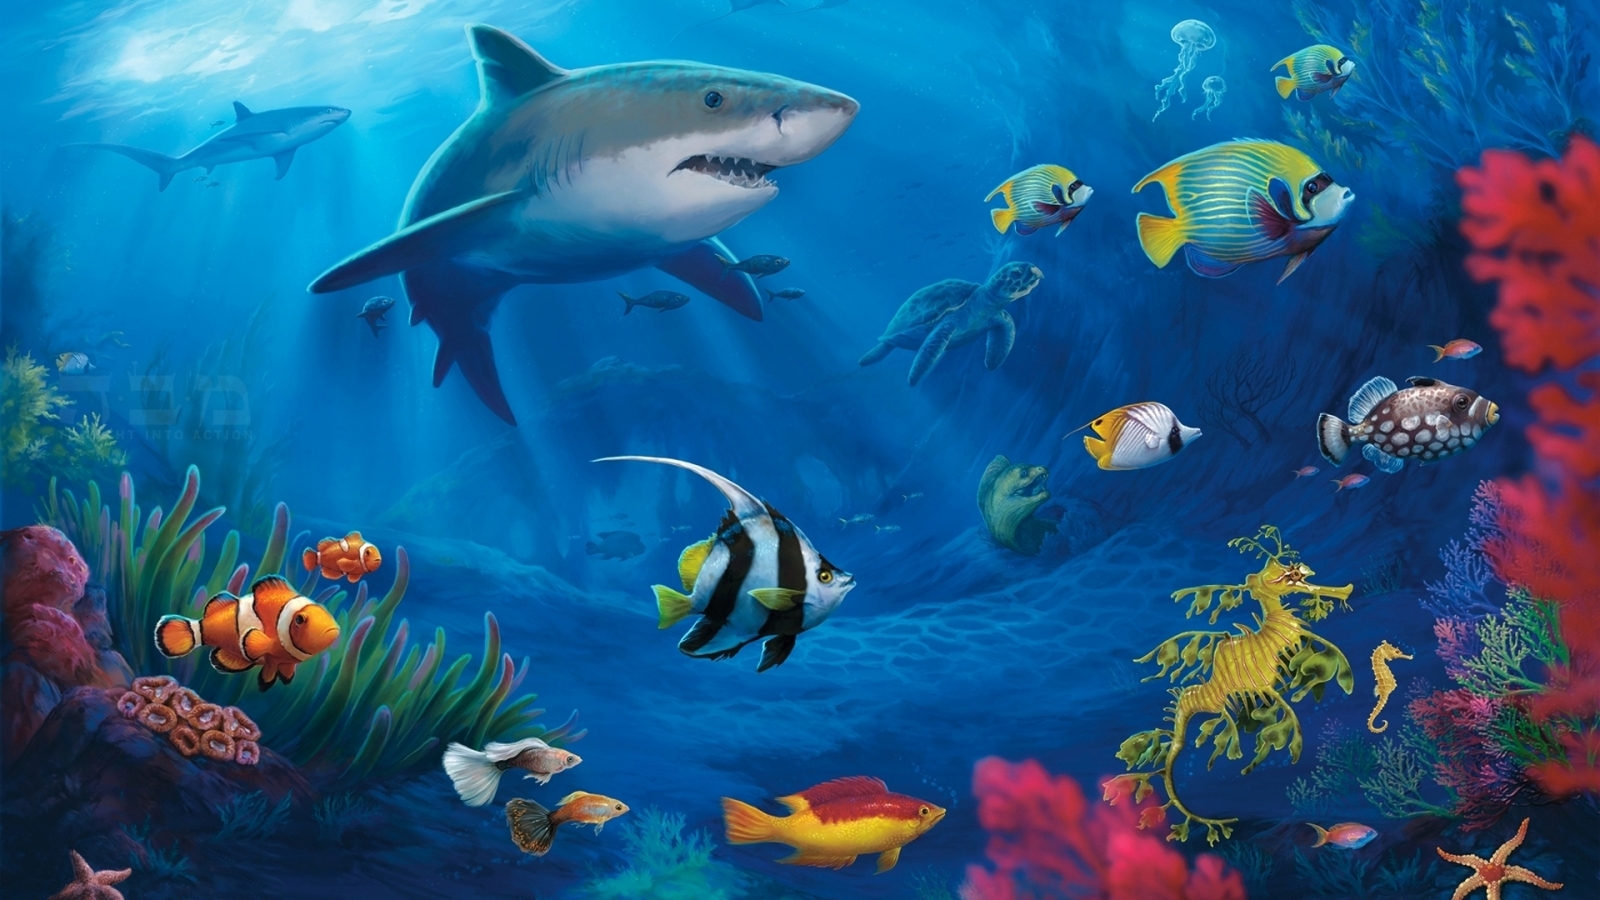 Underwater World Live for 1600 x 900 HDTV resolution